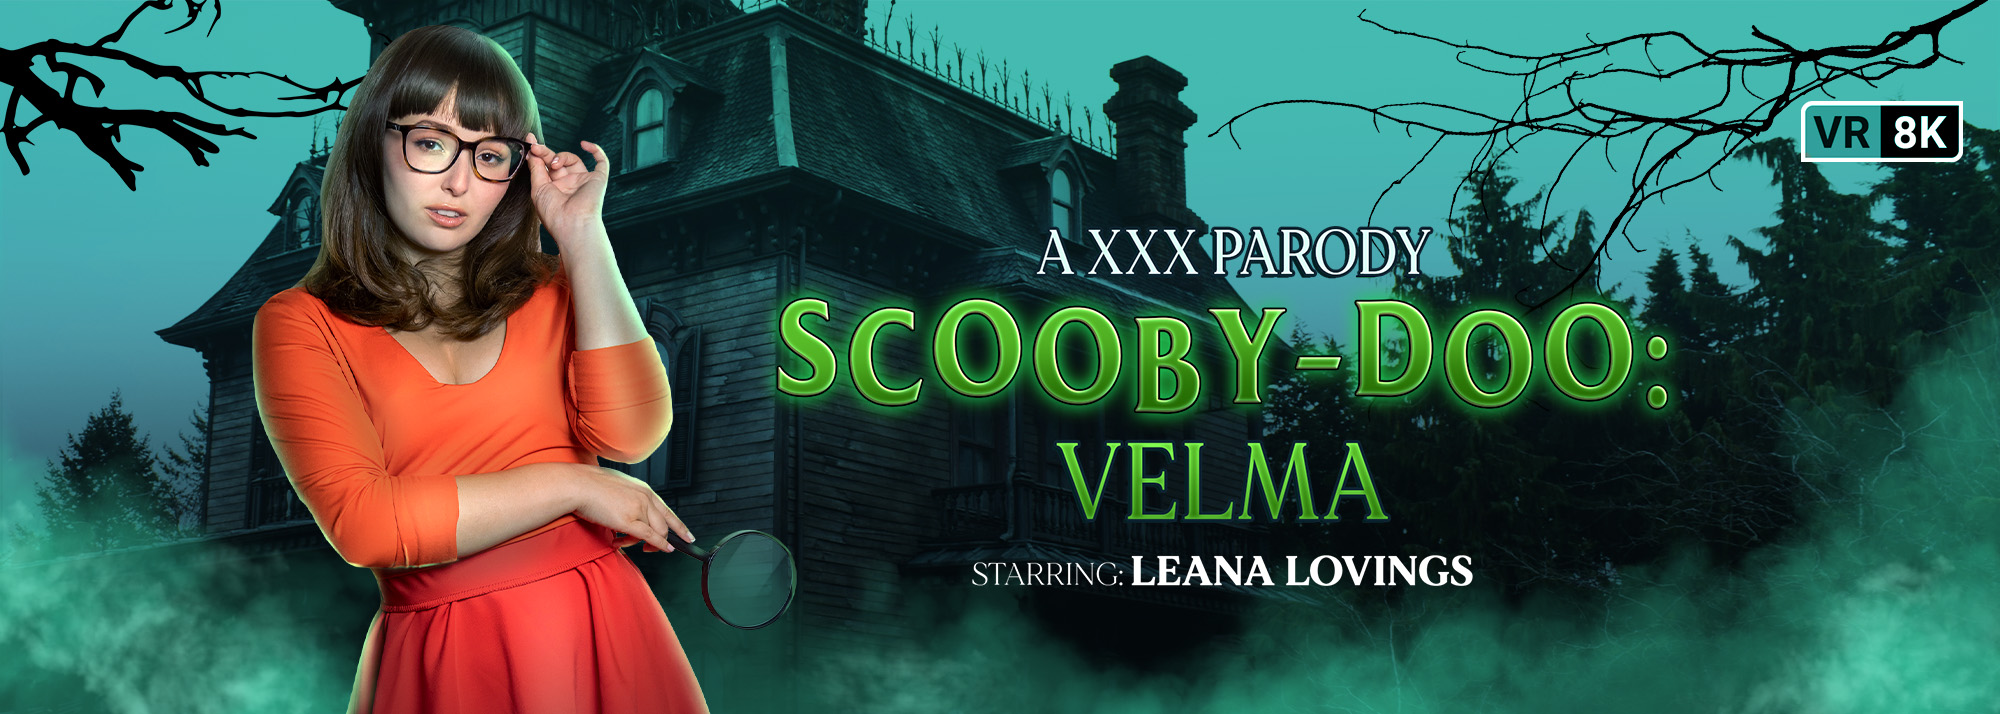 Best of Velma scooby doo xxx